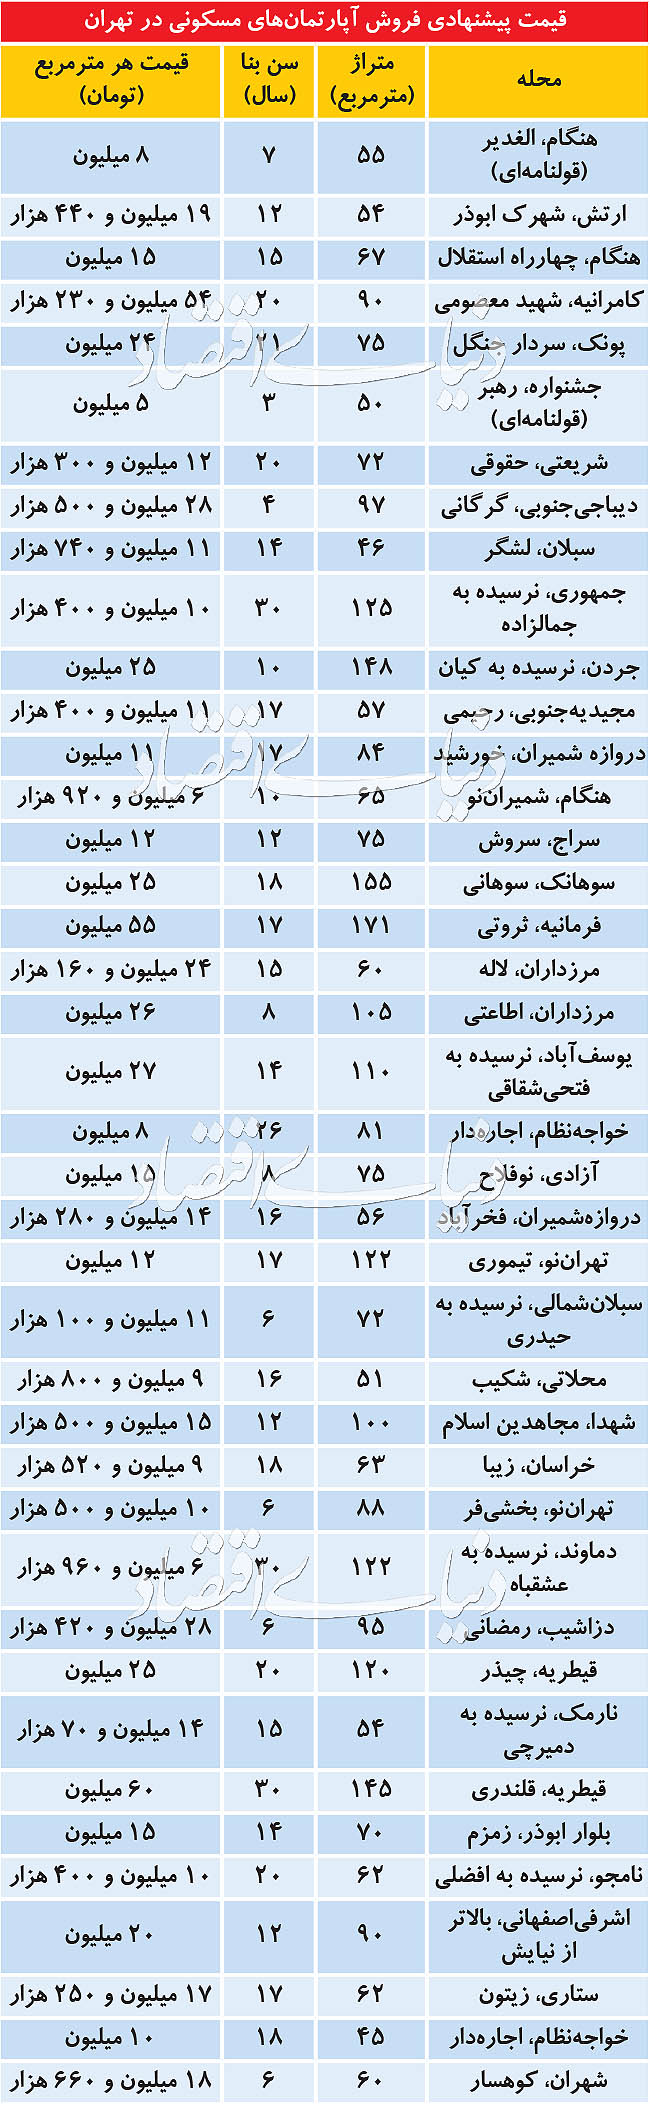 قیمت پیشنهادی فروش آپارتمان در تهران